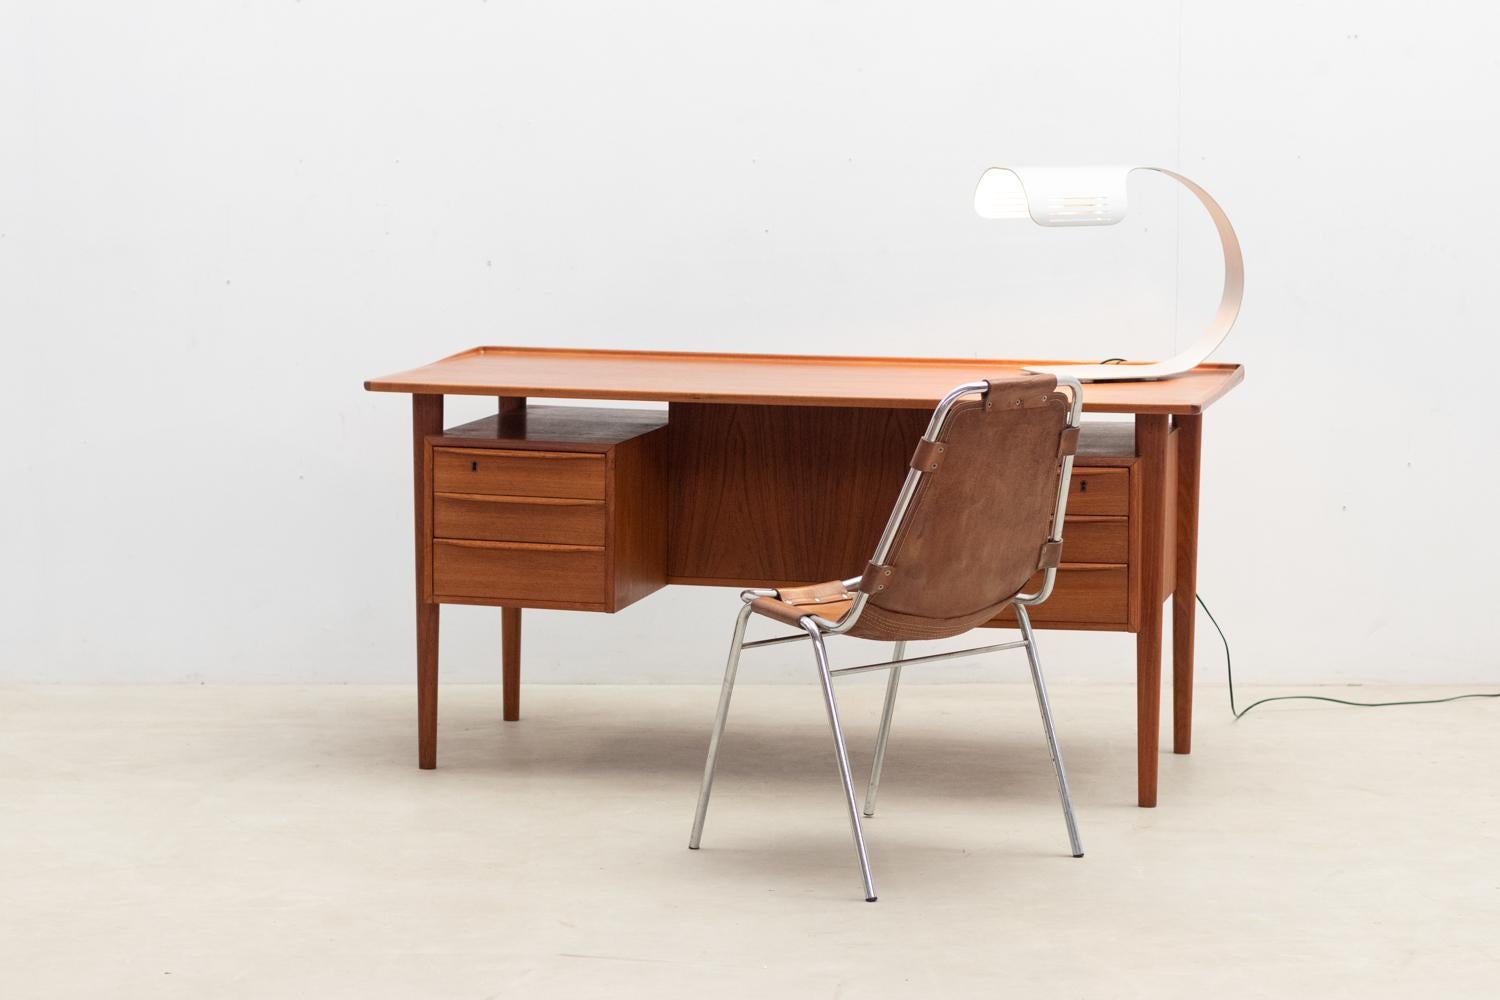 Teakholz-Schreibtisch von Peter Løvig Nielsen aus der Mitte des Jahrhunderts, hergestellt 1967 von der Hedensted Møbelfabrik, Dänemark. Dieser doppelseitige Schreibtisch zeichnet sich durch sein minimalistisches Design und seine Konstruktion aus